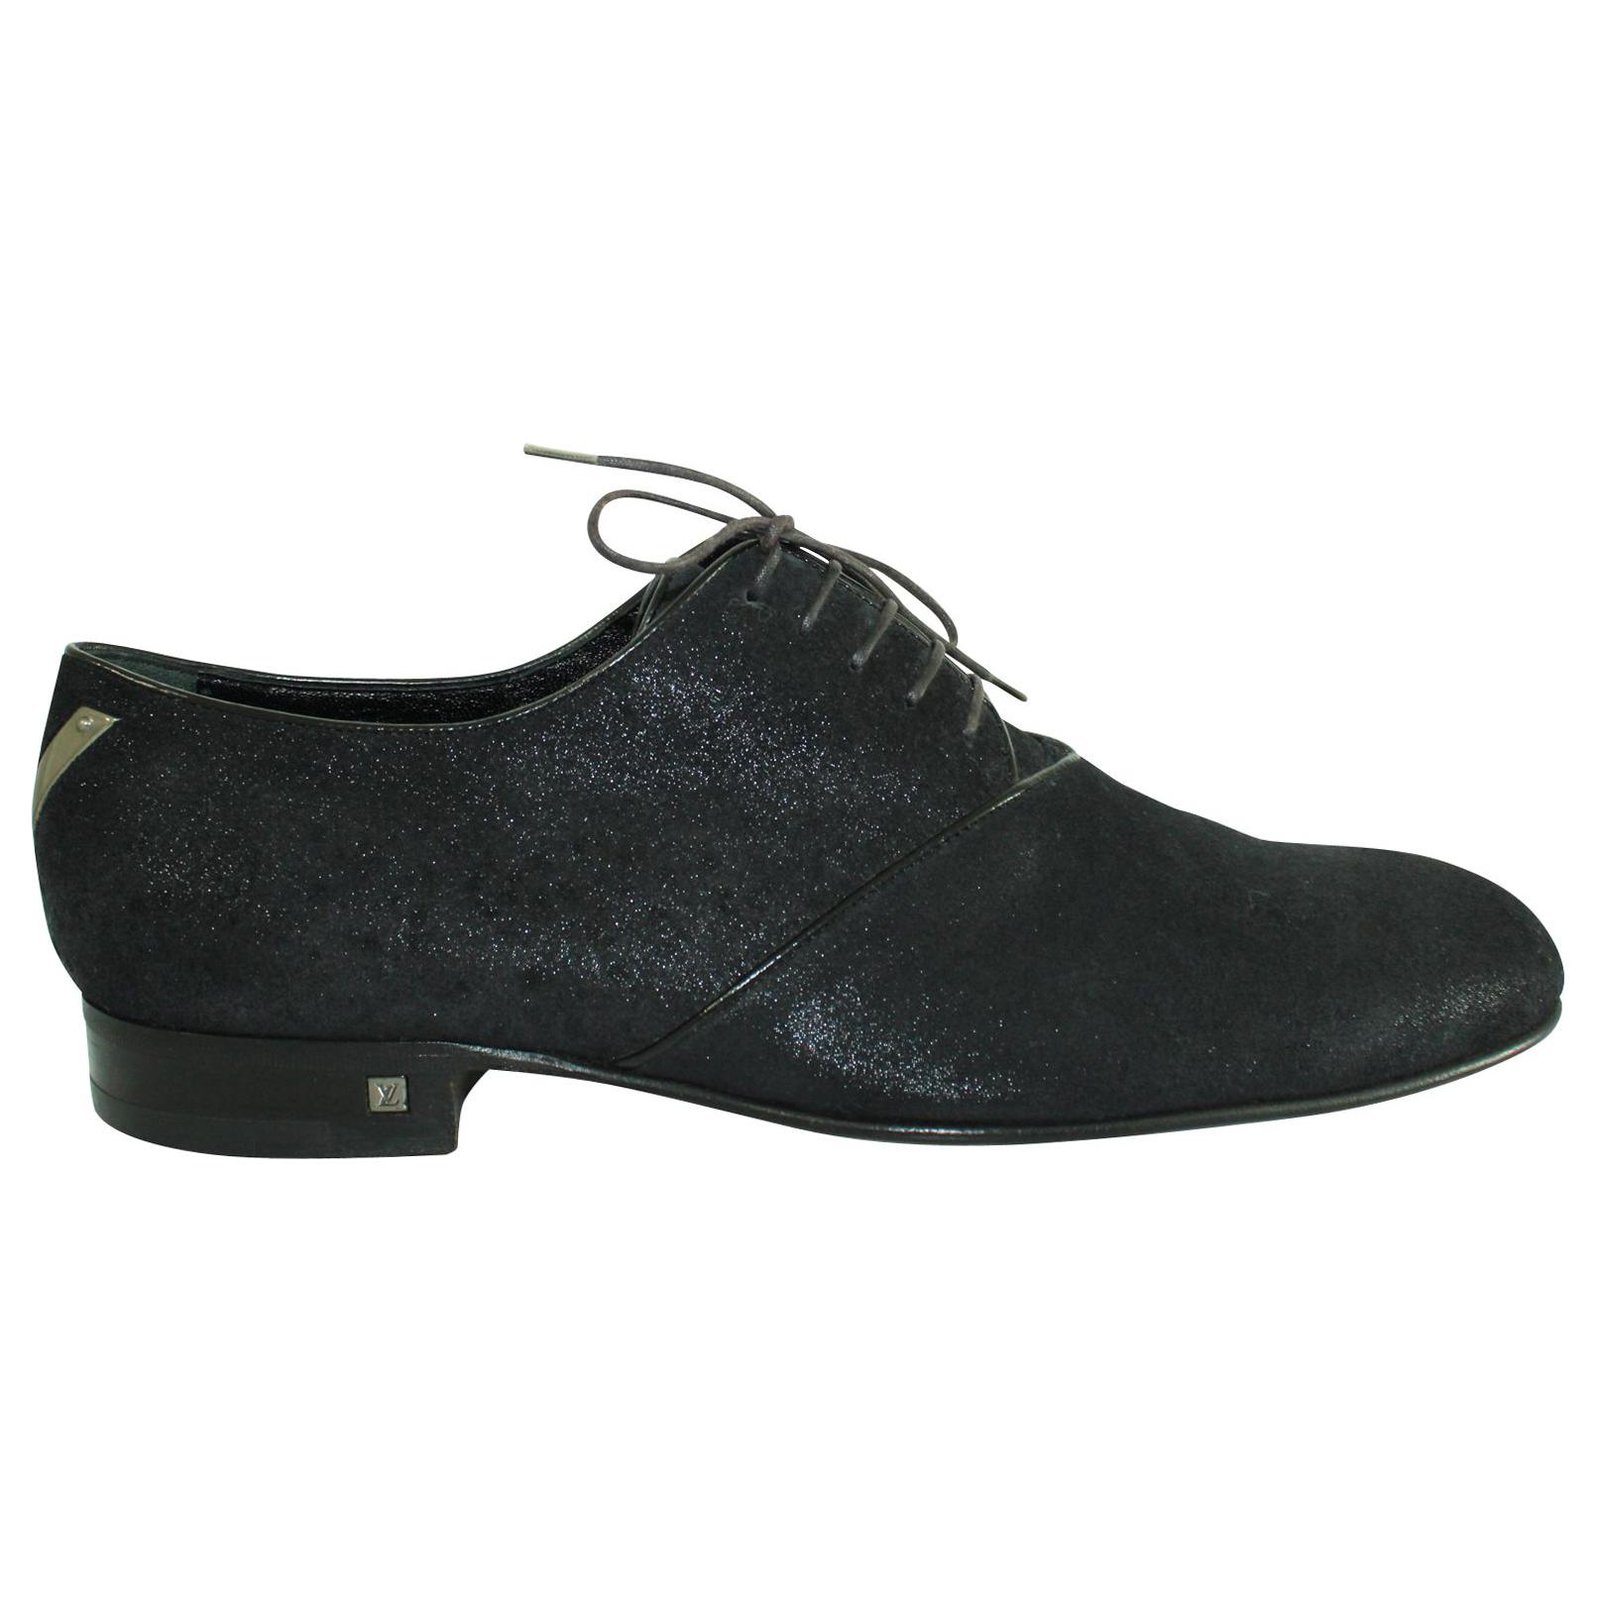 Men Black Louis Vuitton Formal Shoes